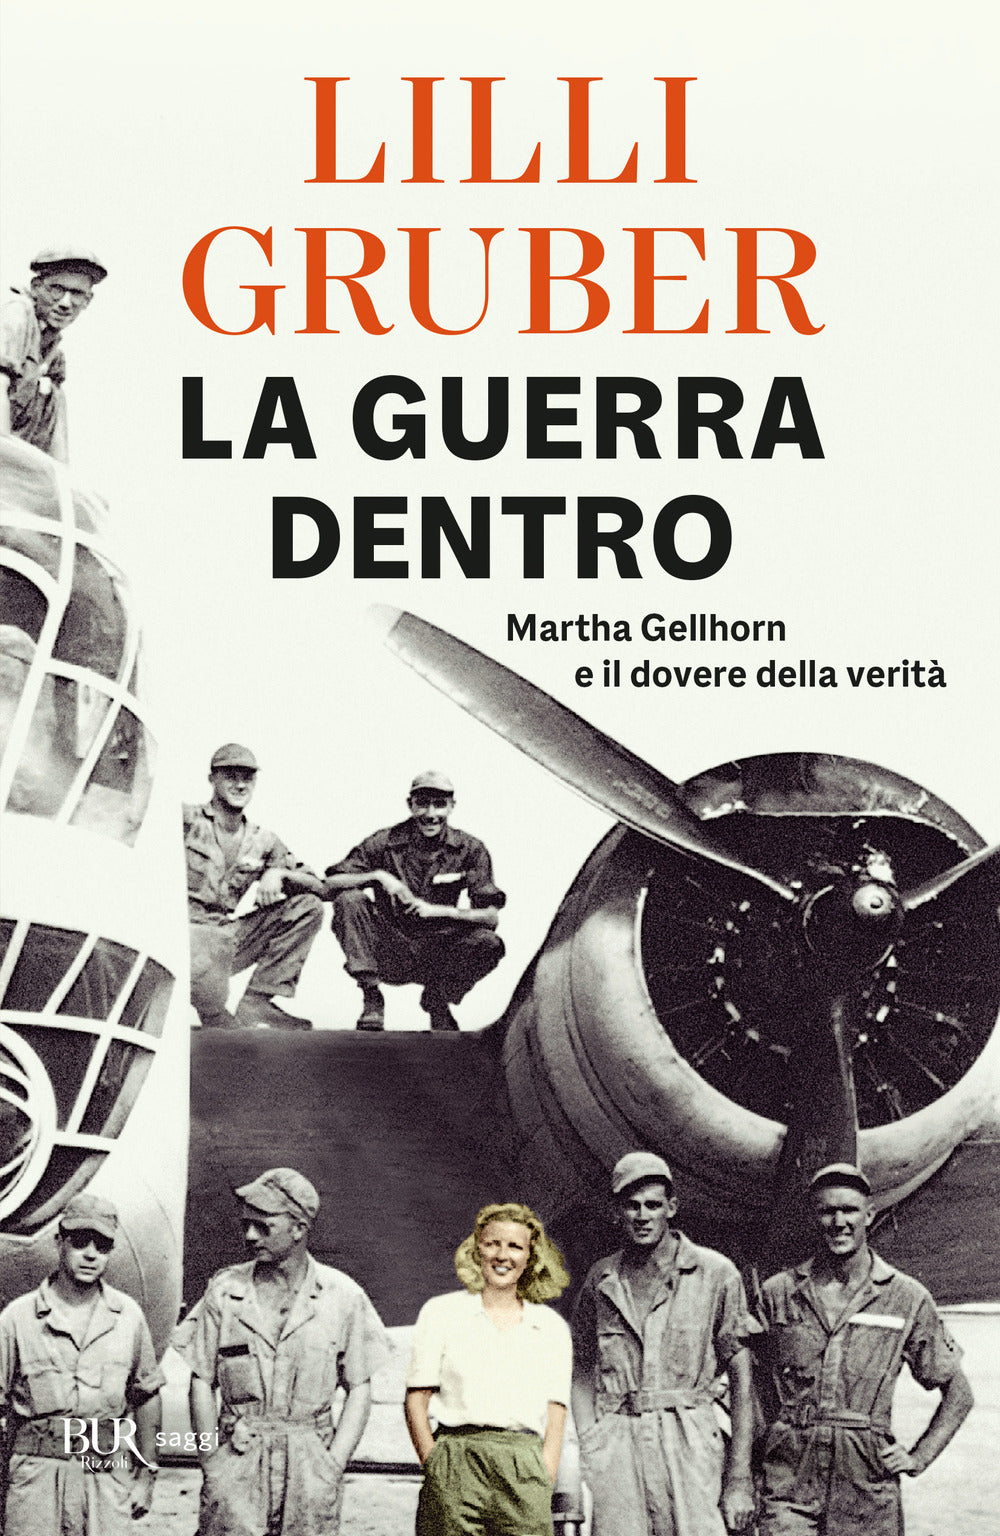 La guerra dentro. Martha Gellhorn e il dovere della verità.